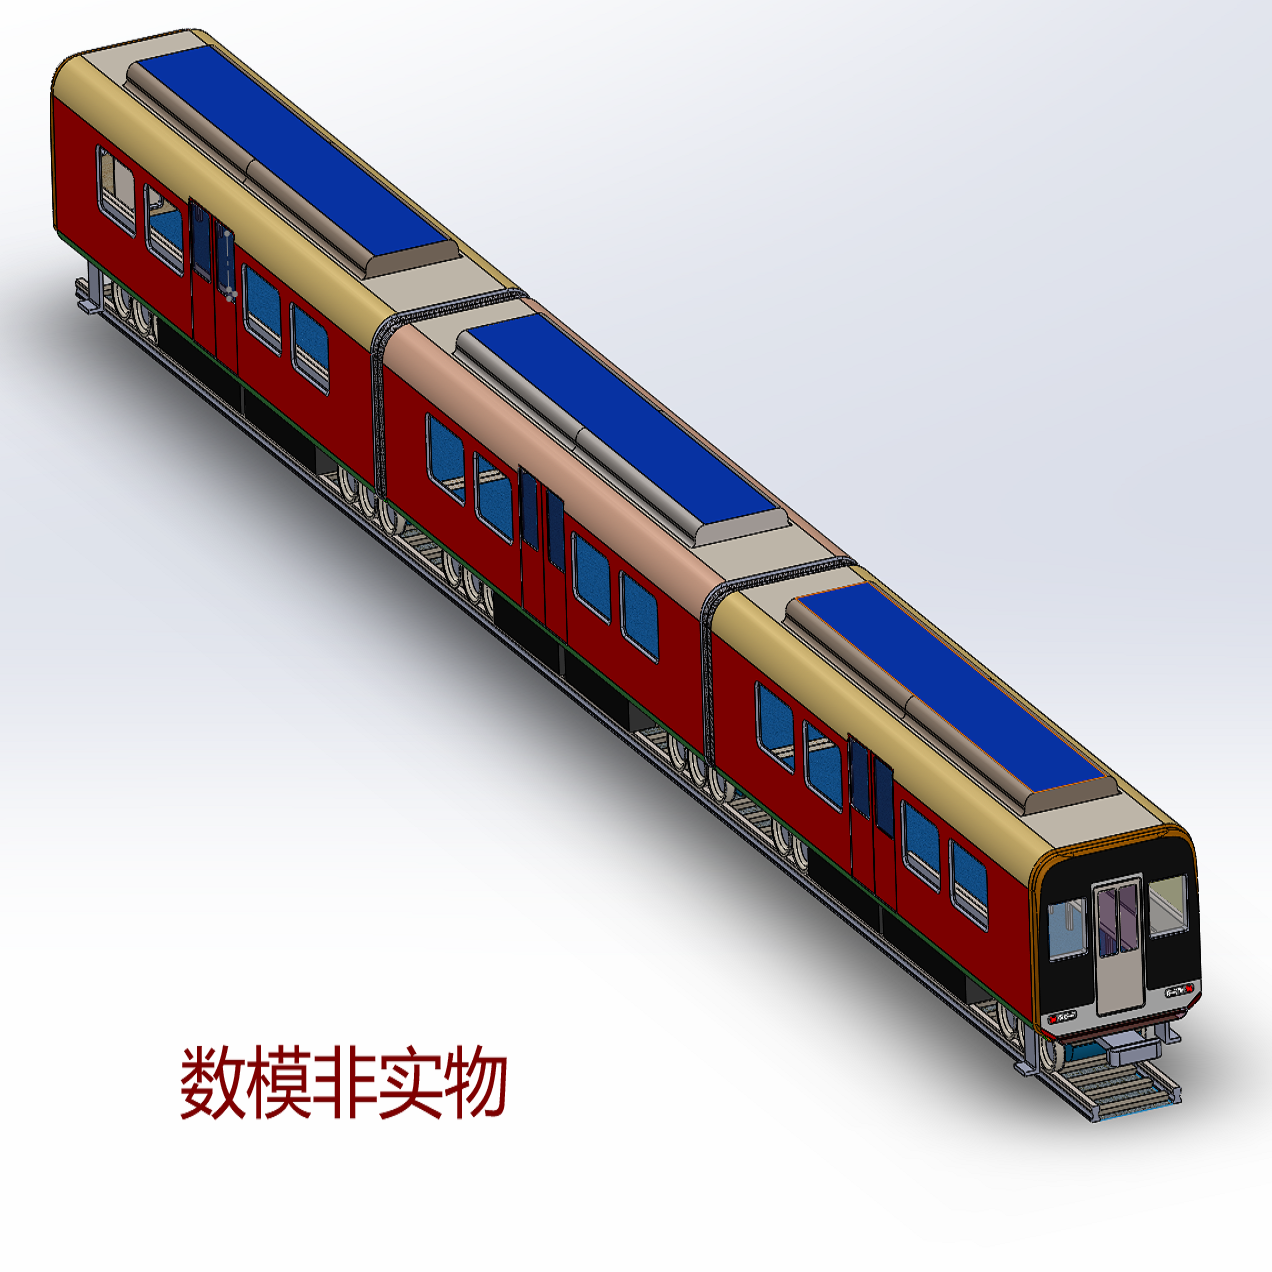 火车高铁列车厢3D三维几何数模型简化Solidworks图纸车箱壳体CAD